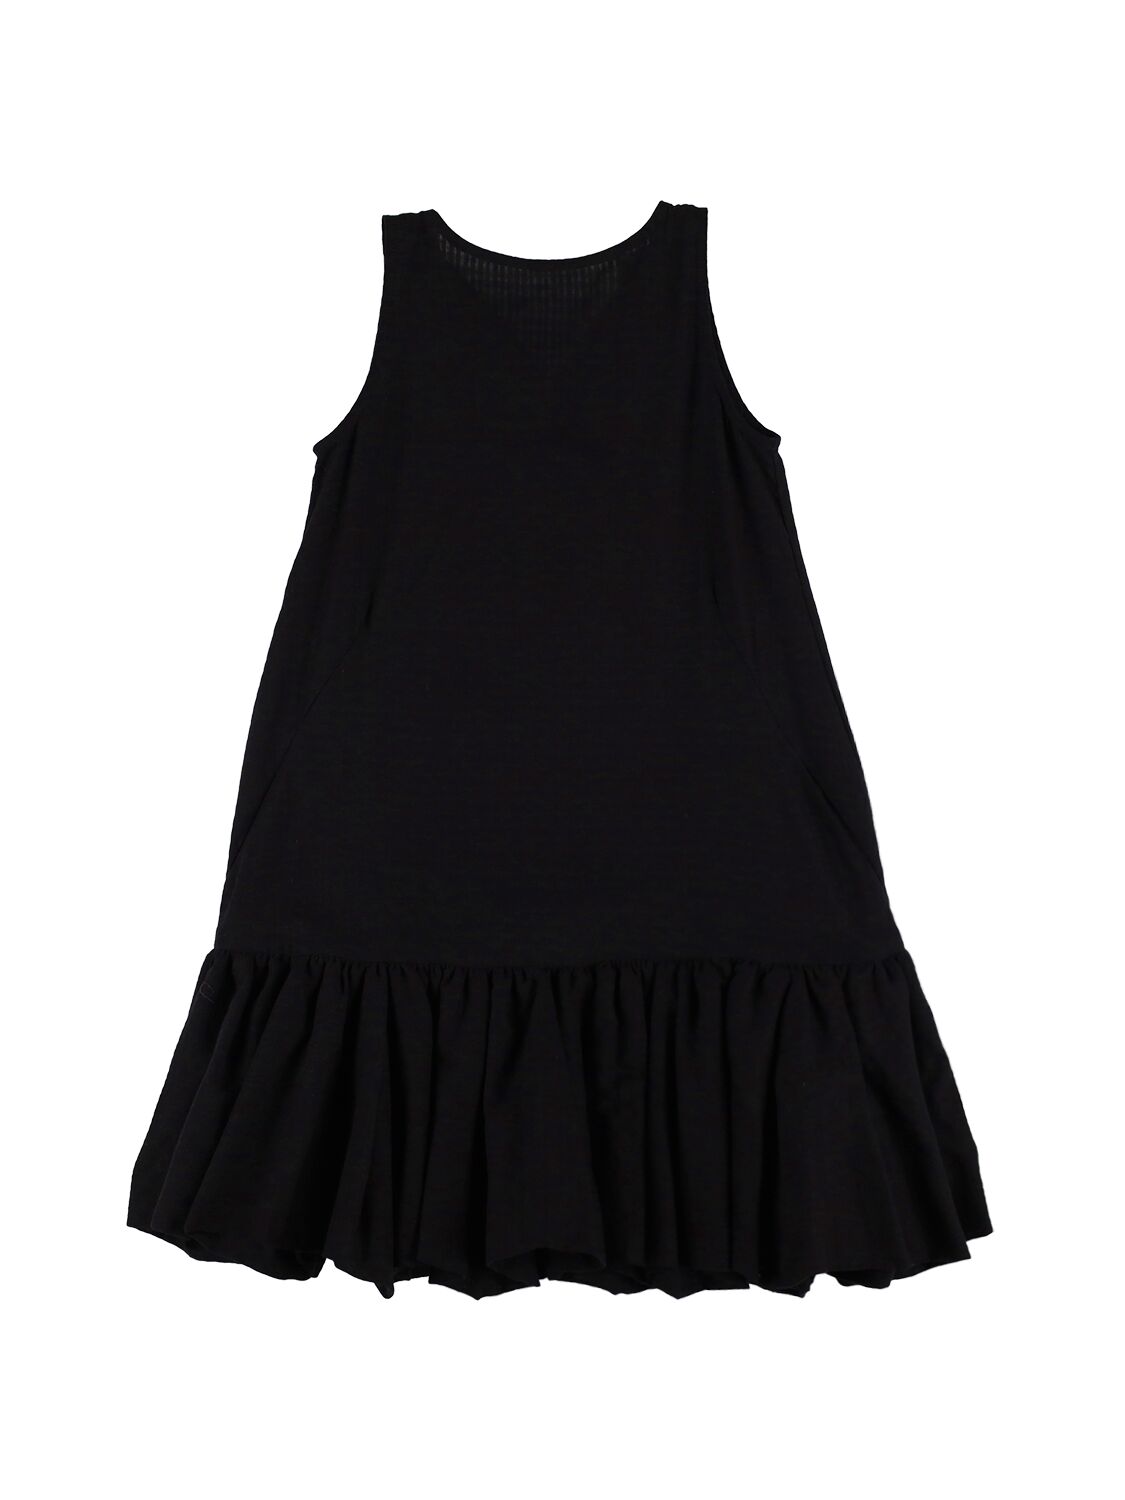 Unlabel Kids' Cotton Poplin Sleeveless Dress In Black